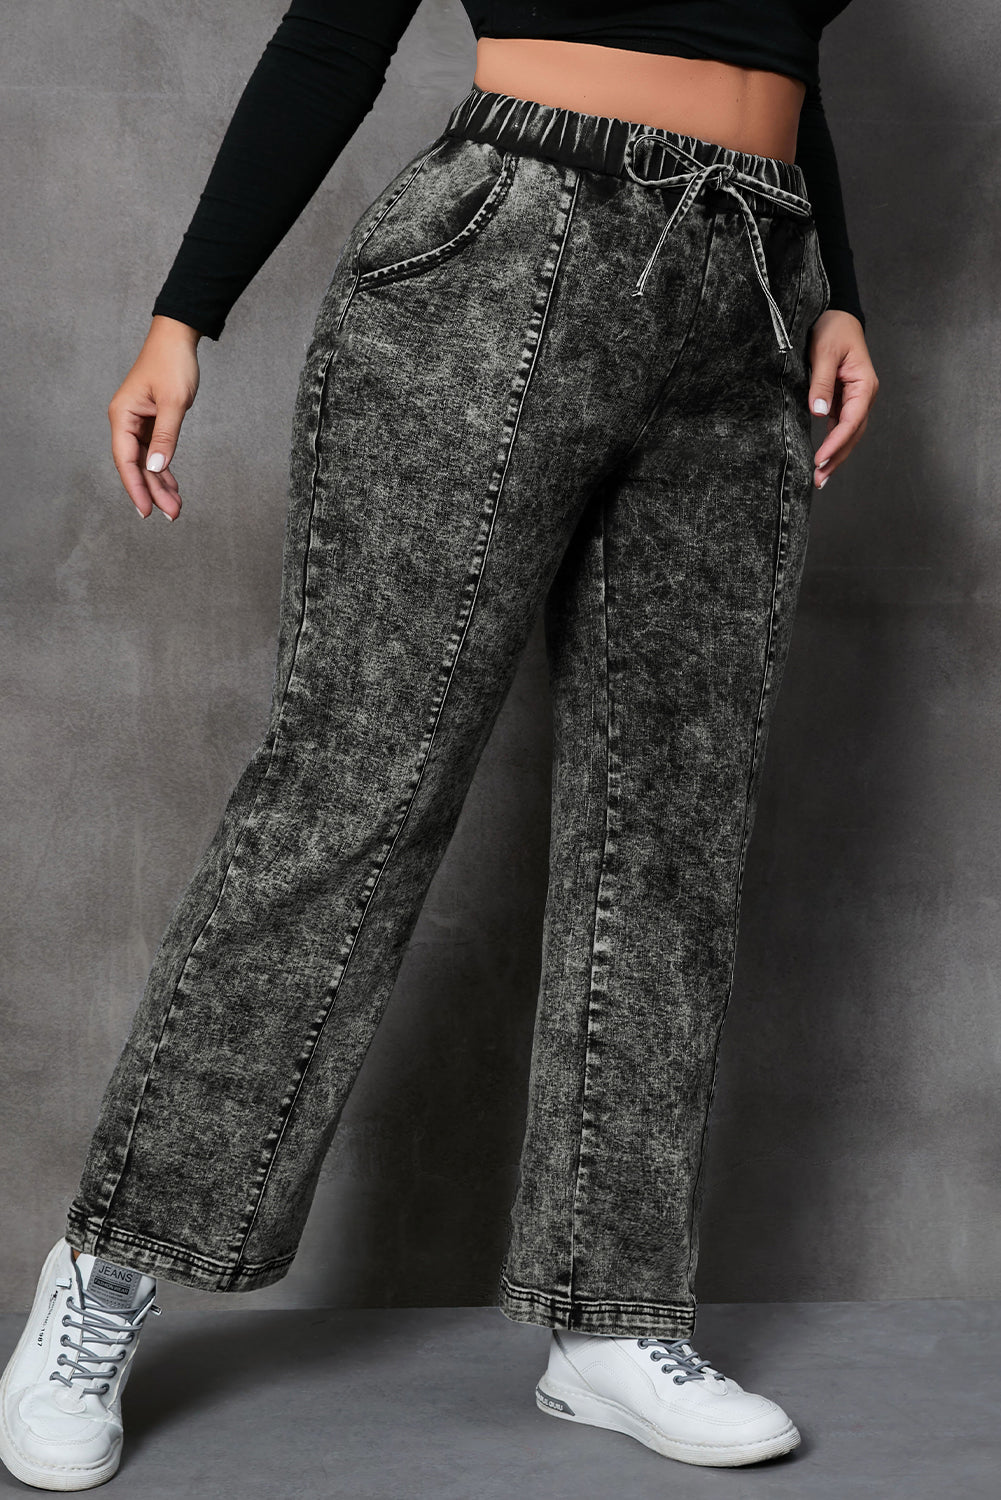 - Voluptuous (+) Plus Size Drawstring Splicing Women's Wide Leg Black Jeans - Plus Size Jeans at TFC&H Co.